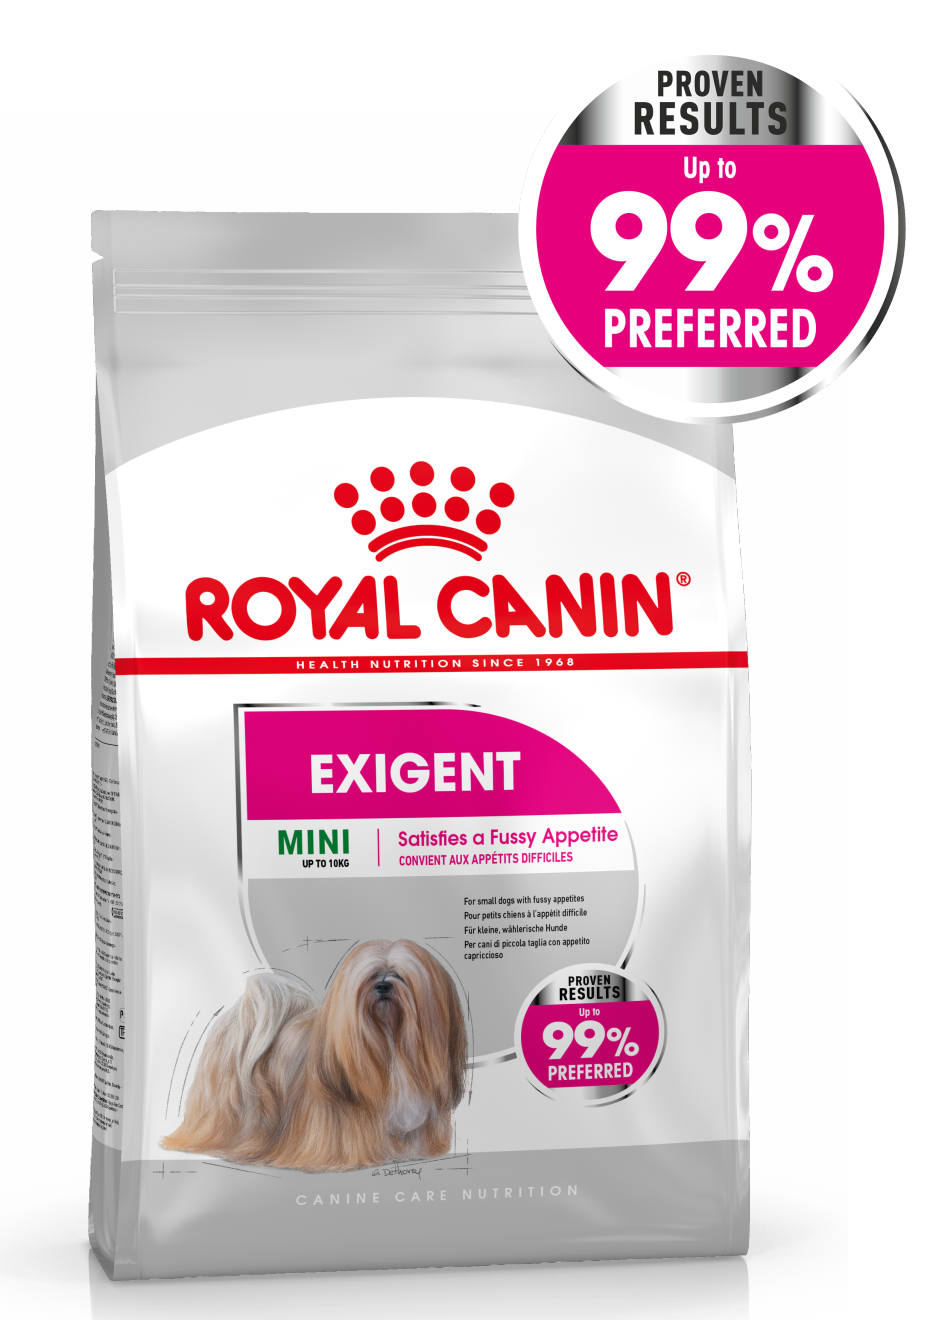 Packshot of Mini Exigent Canine Care Nutrition